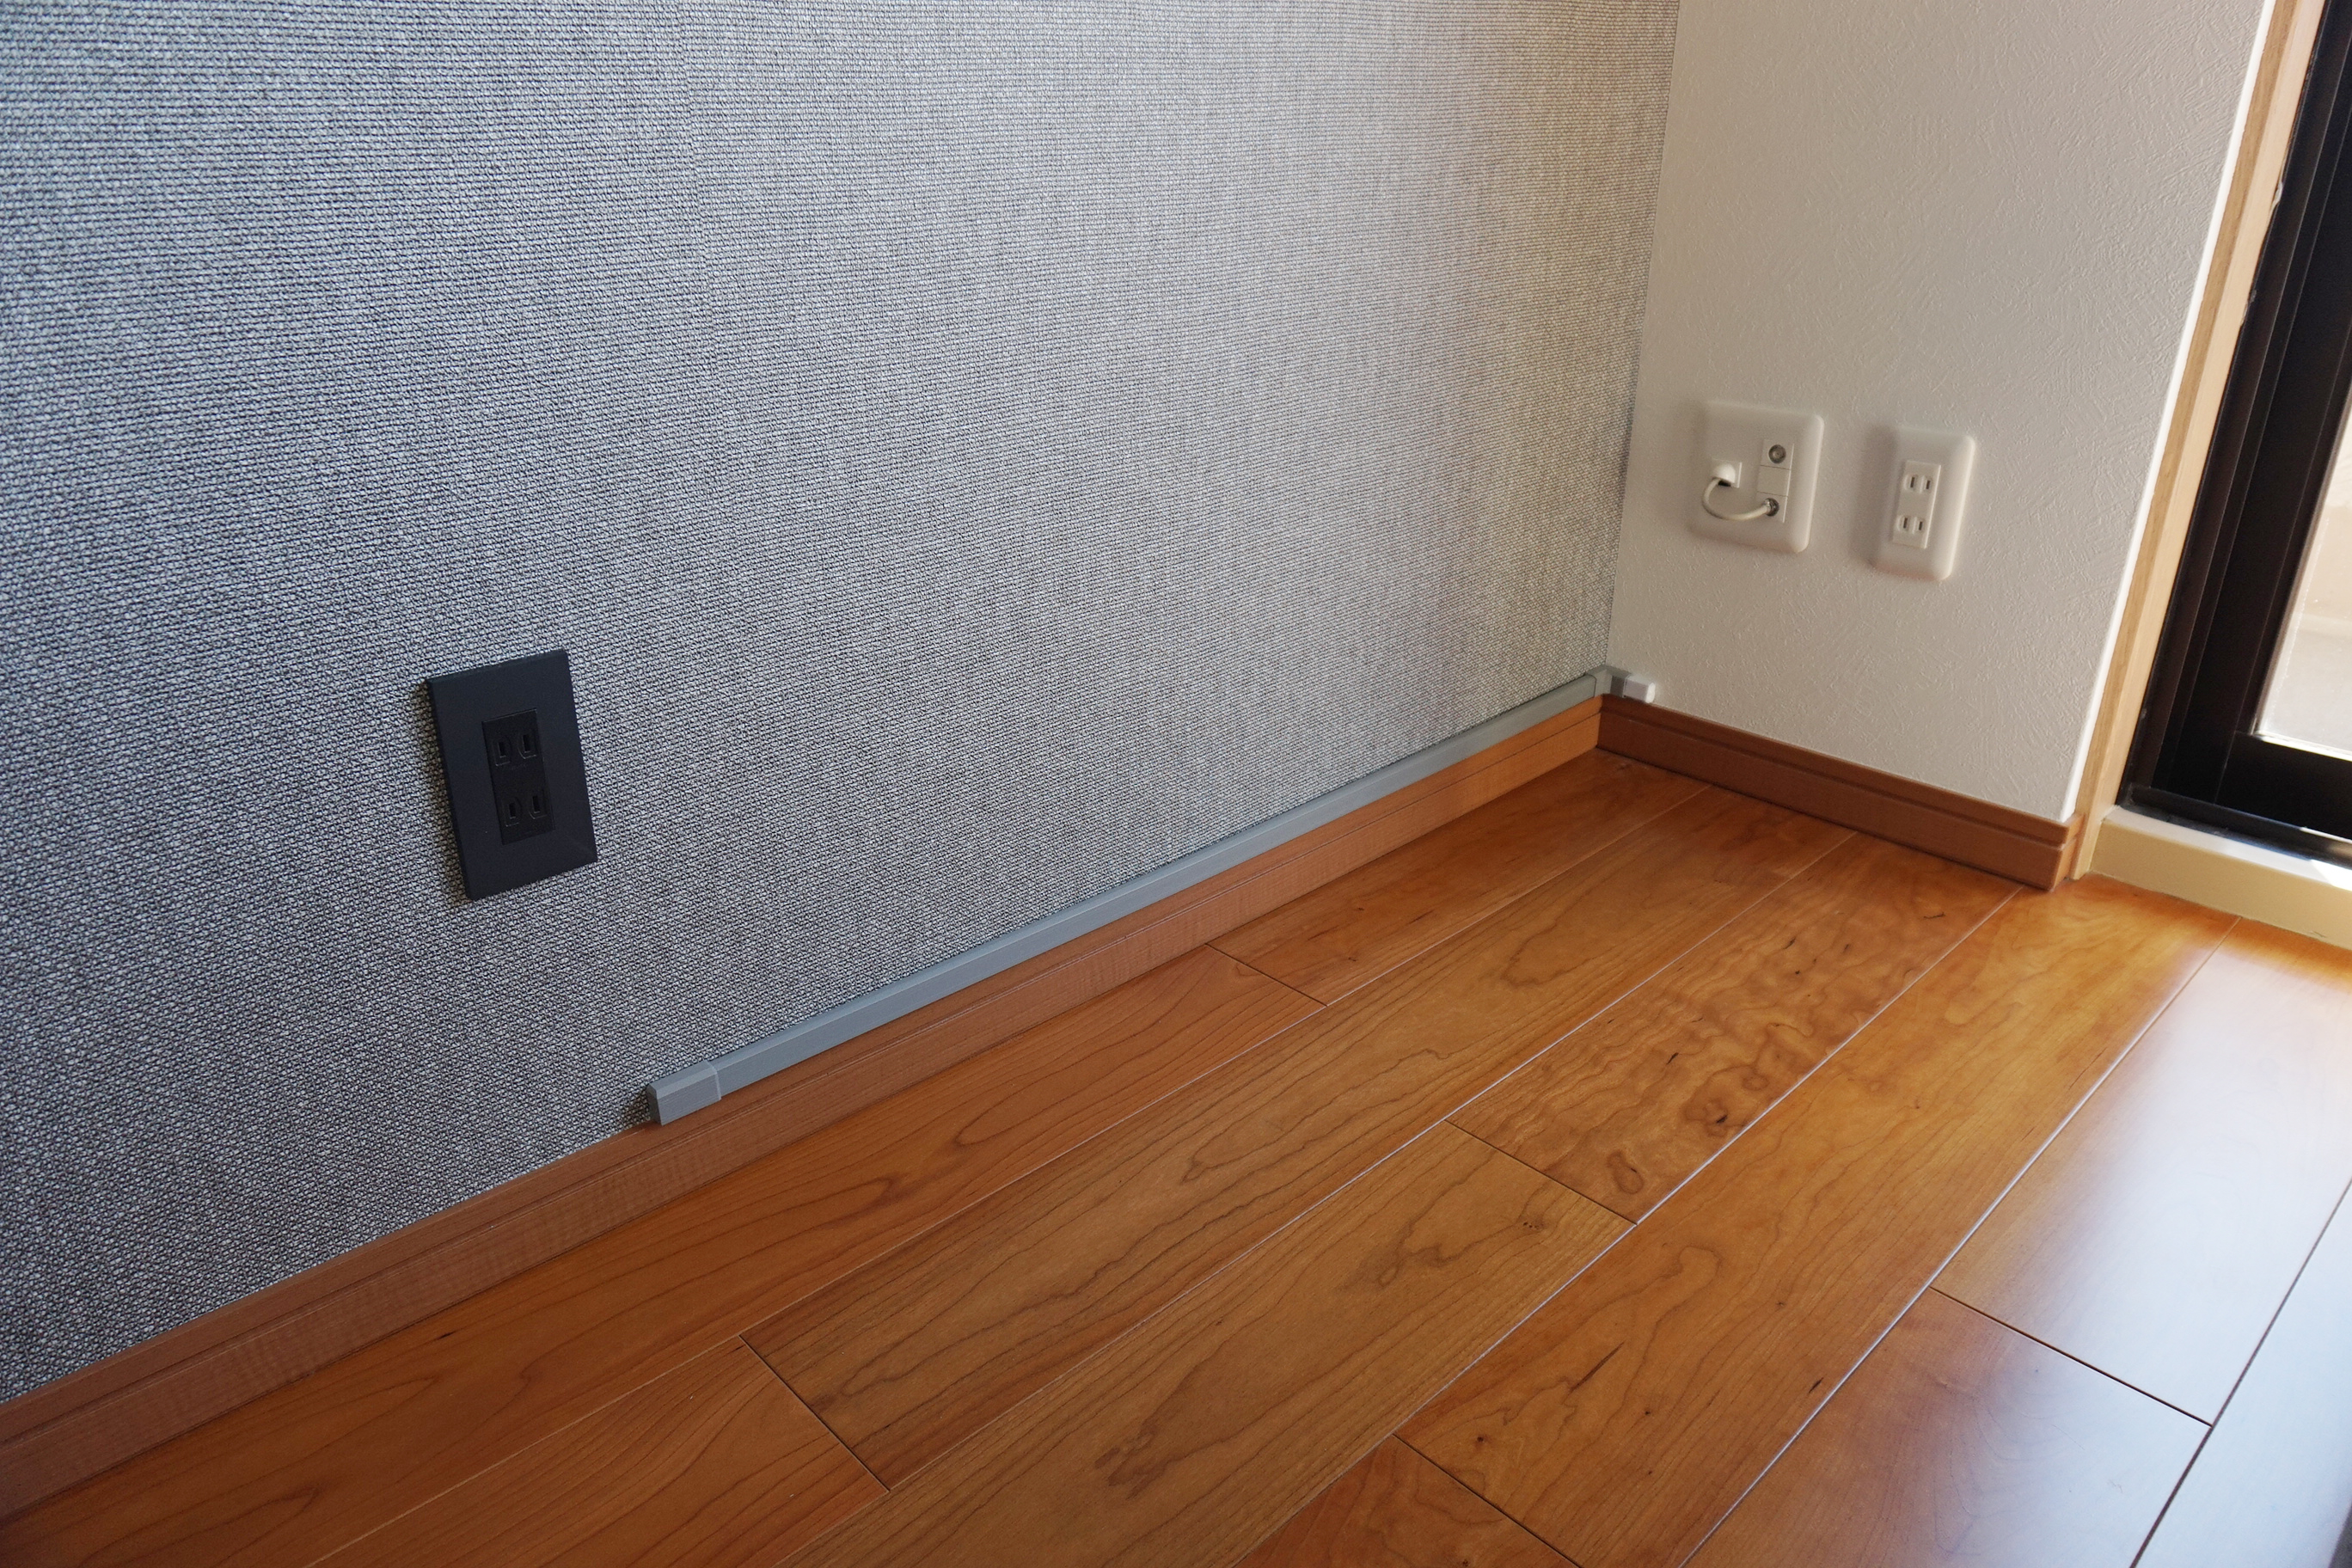 名古屋市 千種区でお部屋の雰囲気と馴染むこだわりの壁掛け施工 ソニー有機elテレビ Kj 55a9f